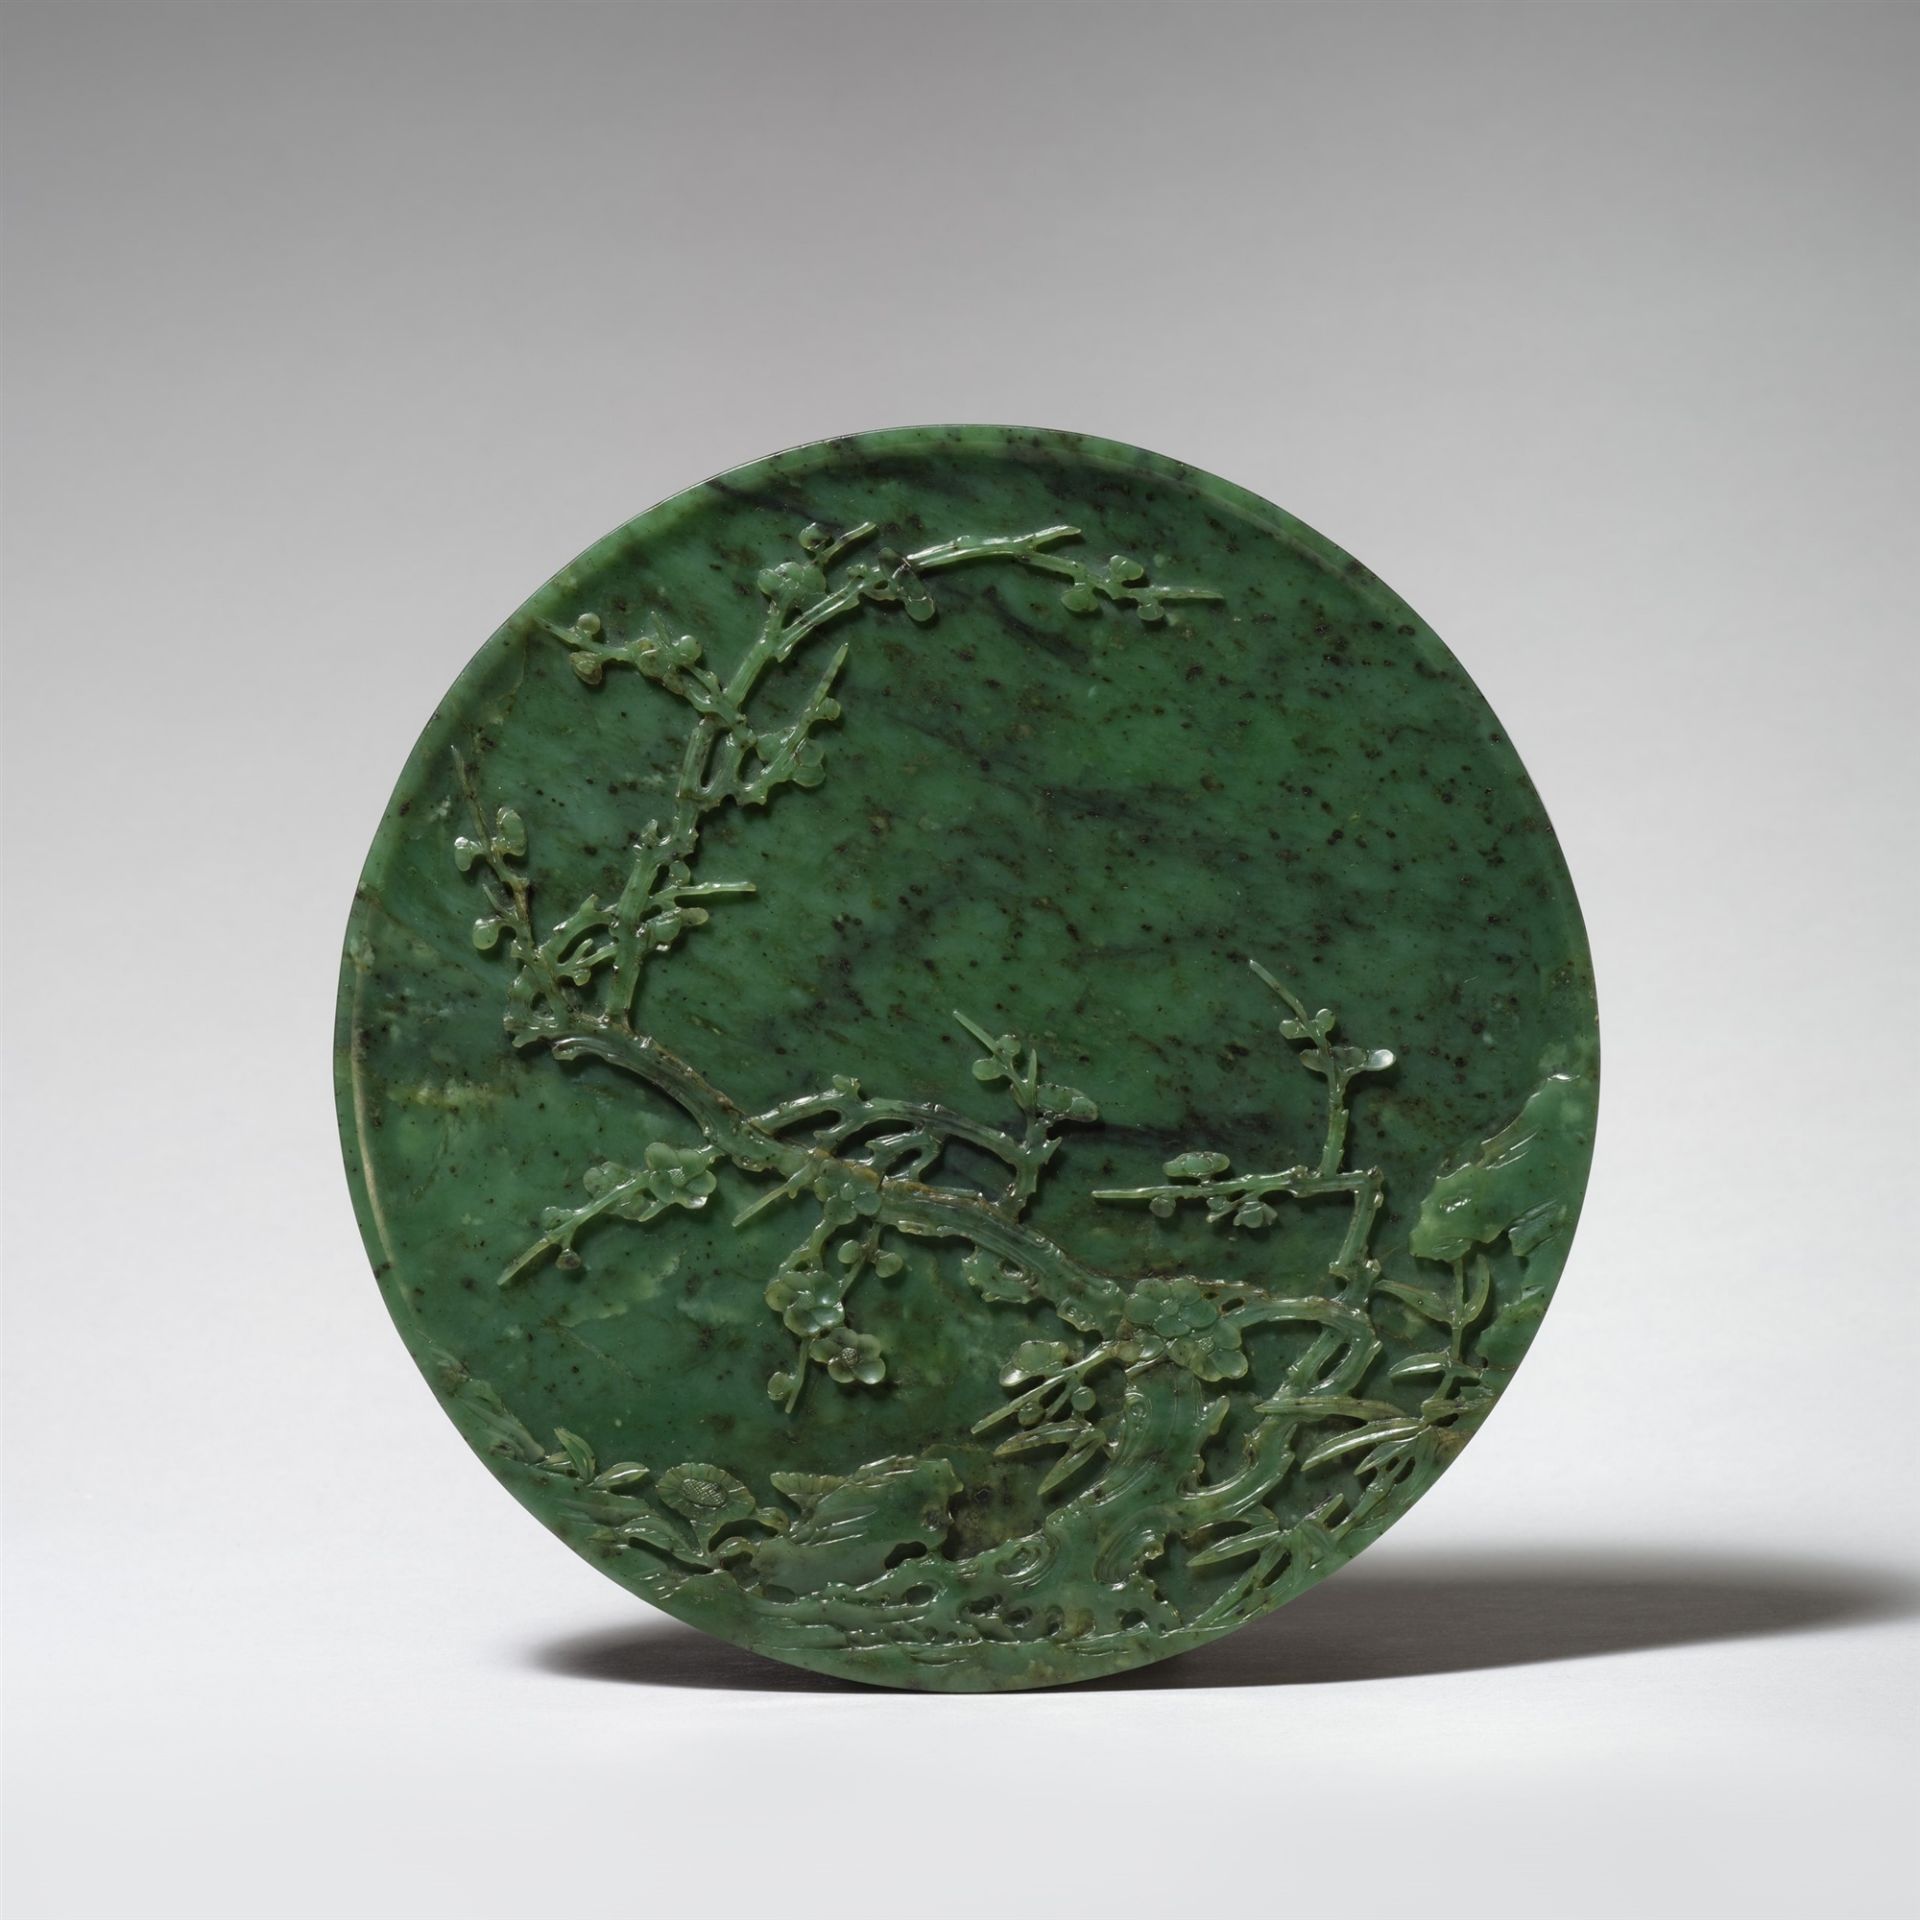 Runde, spinat-grüne Jade-Platte für einen Tischstellschirm. 2. Hälfte 18./frühes 19. Jh. - Bild 2 aus 3